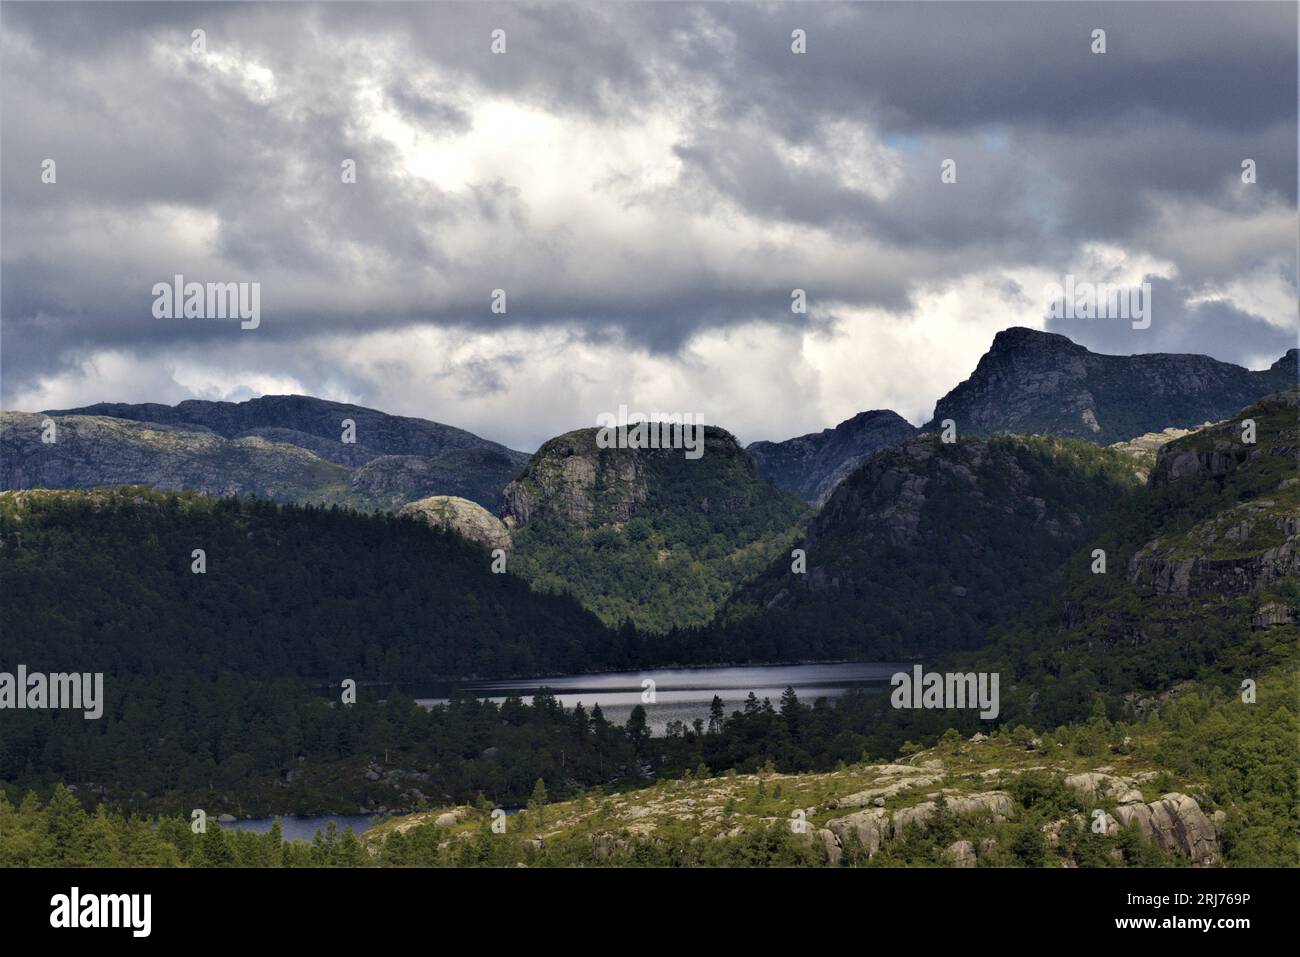 Tauchen Sie ein in Stavanger's ruhige Wanderung: Ein ruhiger Bergsee umgeben von Bäumen und monumentalen Steingipfeln. Die Pracht der Natur in Norwegen. #MountainHike Stockfoto